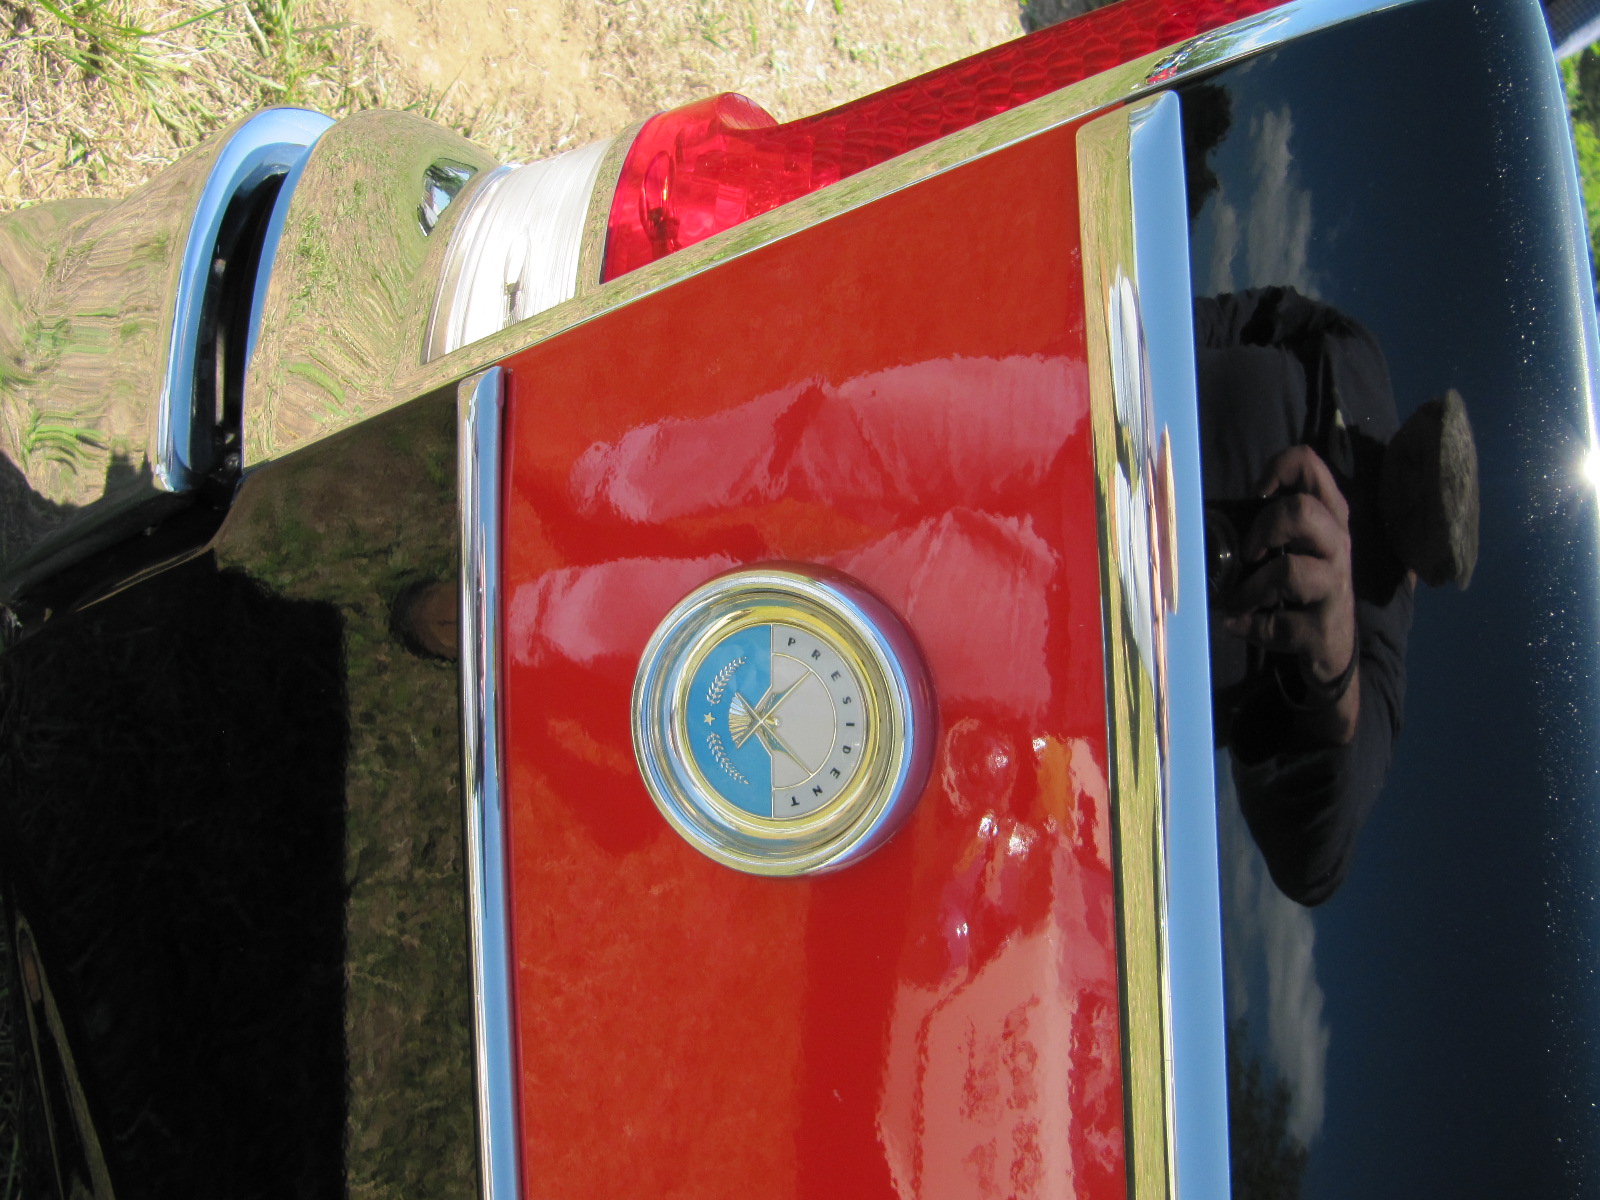 56 Studebaker President Classic blk red medallion | Flickr - Photo ...